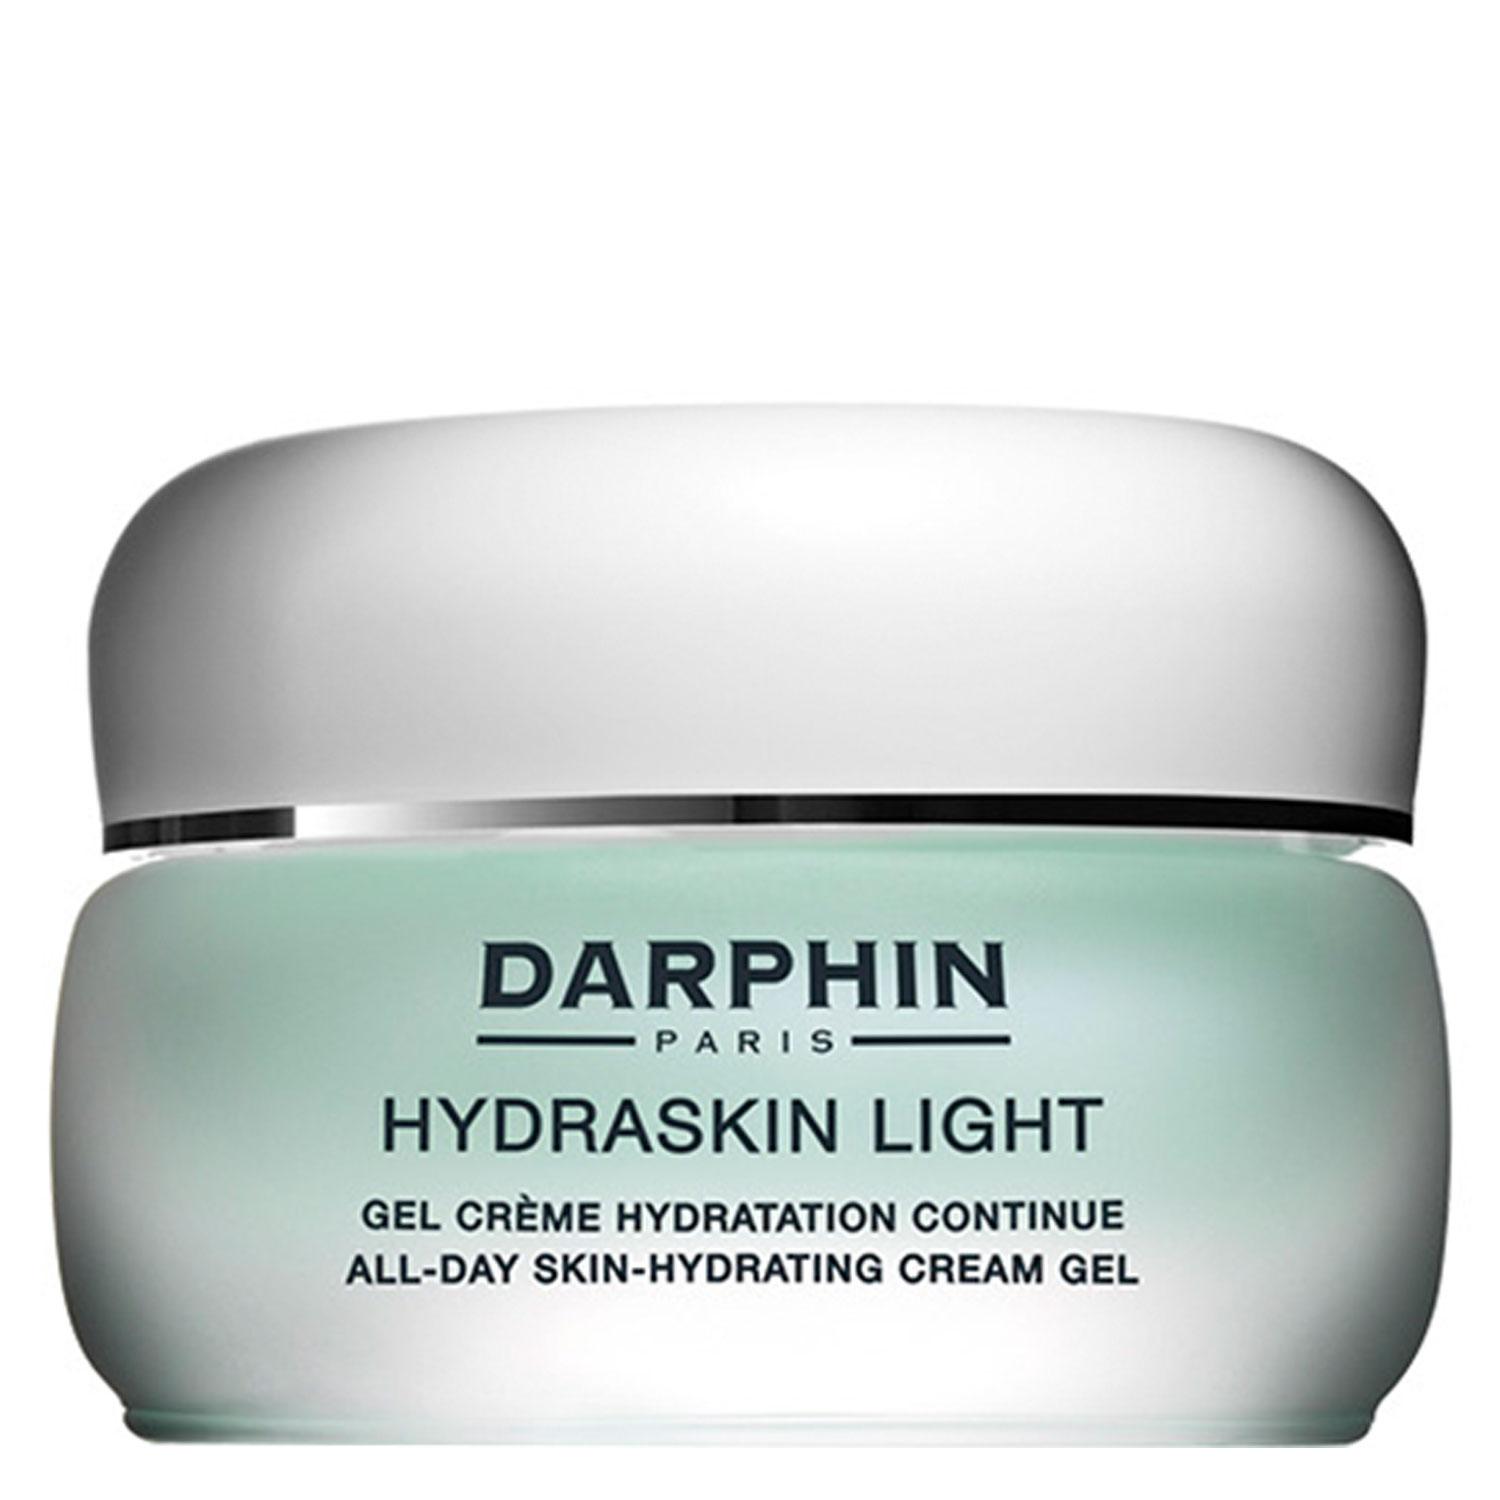 HYDRASKIN - Light All-Day Skin-Hydrating Cream Gel